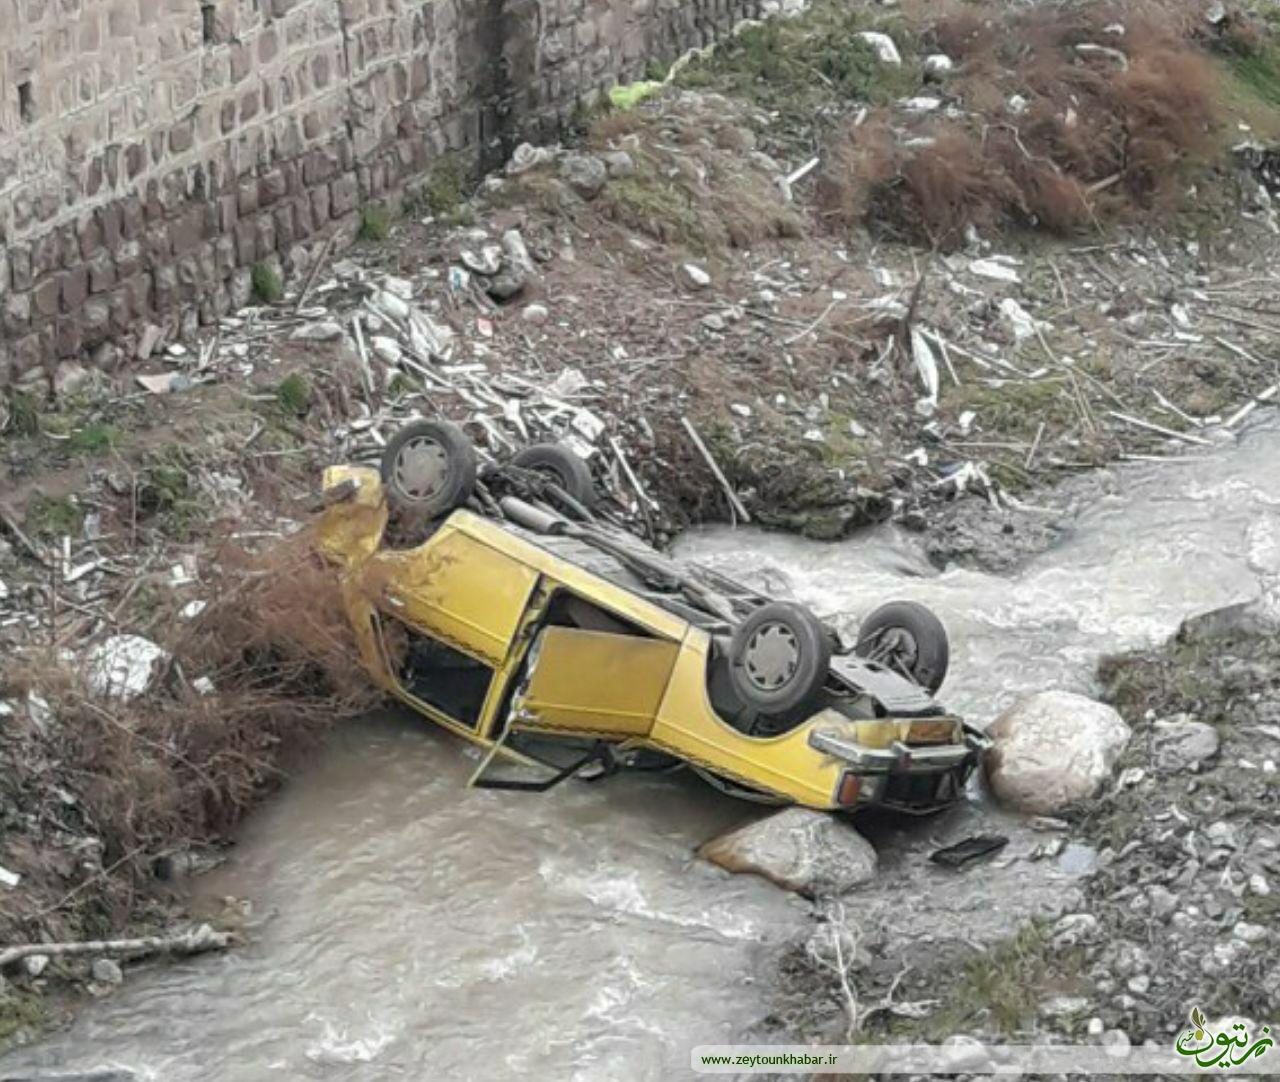 سقوط خودرو تاکسی به رودخانه در رودبار!+ تصاویر